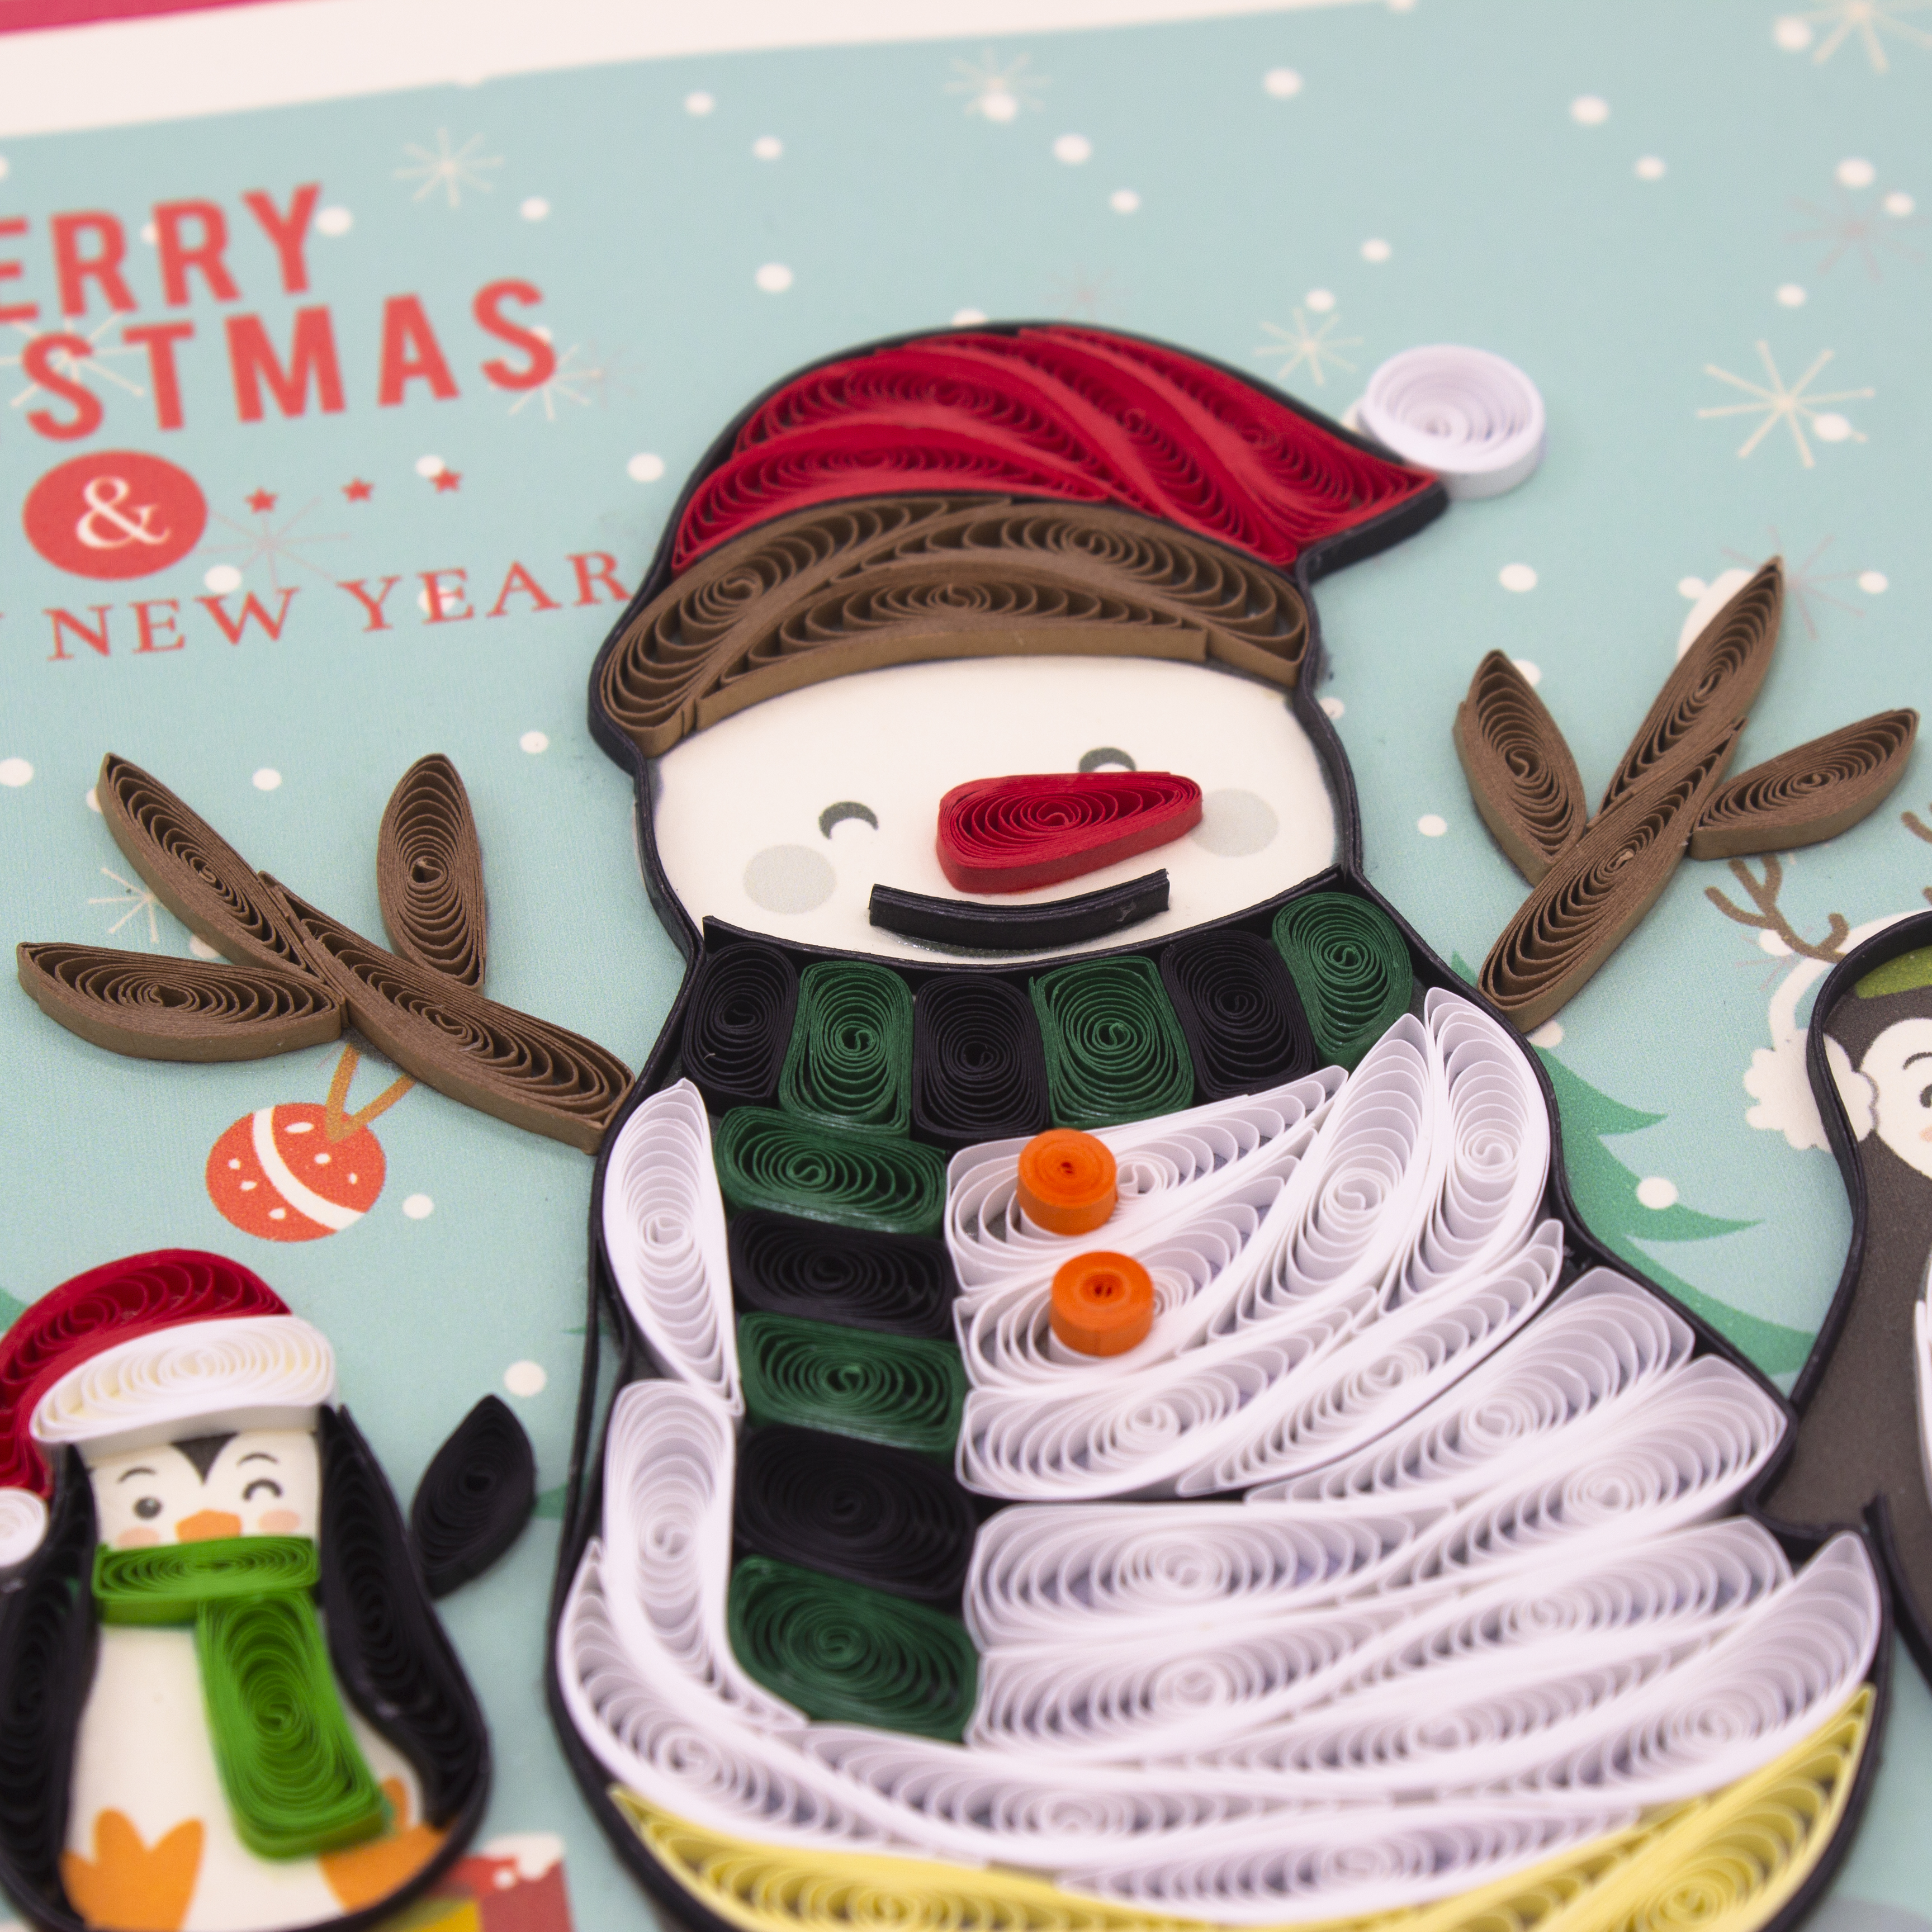 Hình ảnh Tiki NowThiệp NOEL Giấy Xoắn Thủ Công (Quilling Card) Người Tuyết Và Chim Cánh Cụt Độc Đáo - Tặng kèm khung giấy để bàn. Thiệp Giáng Sinh handmade độc đáo 